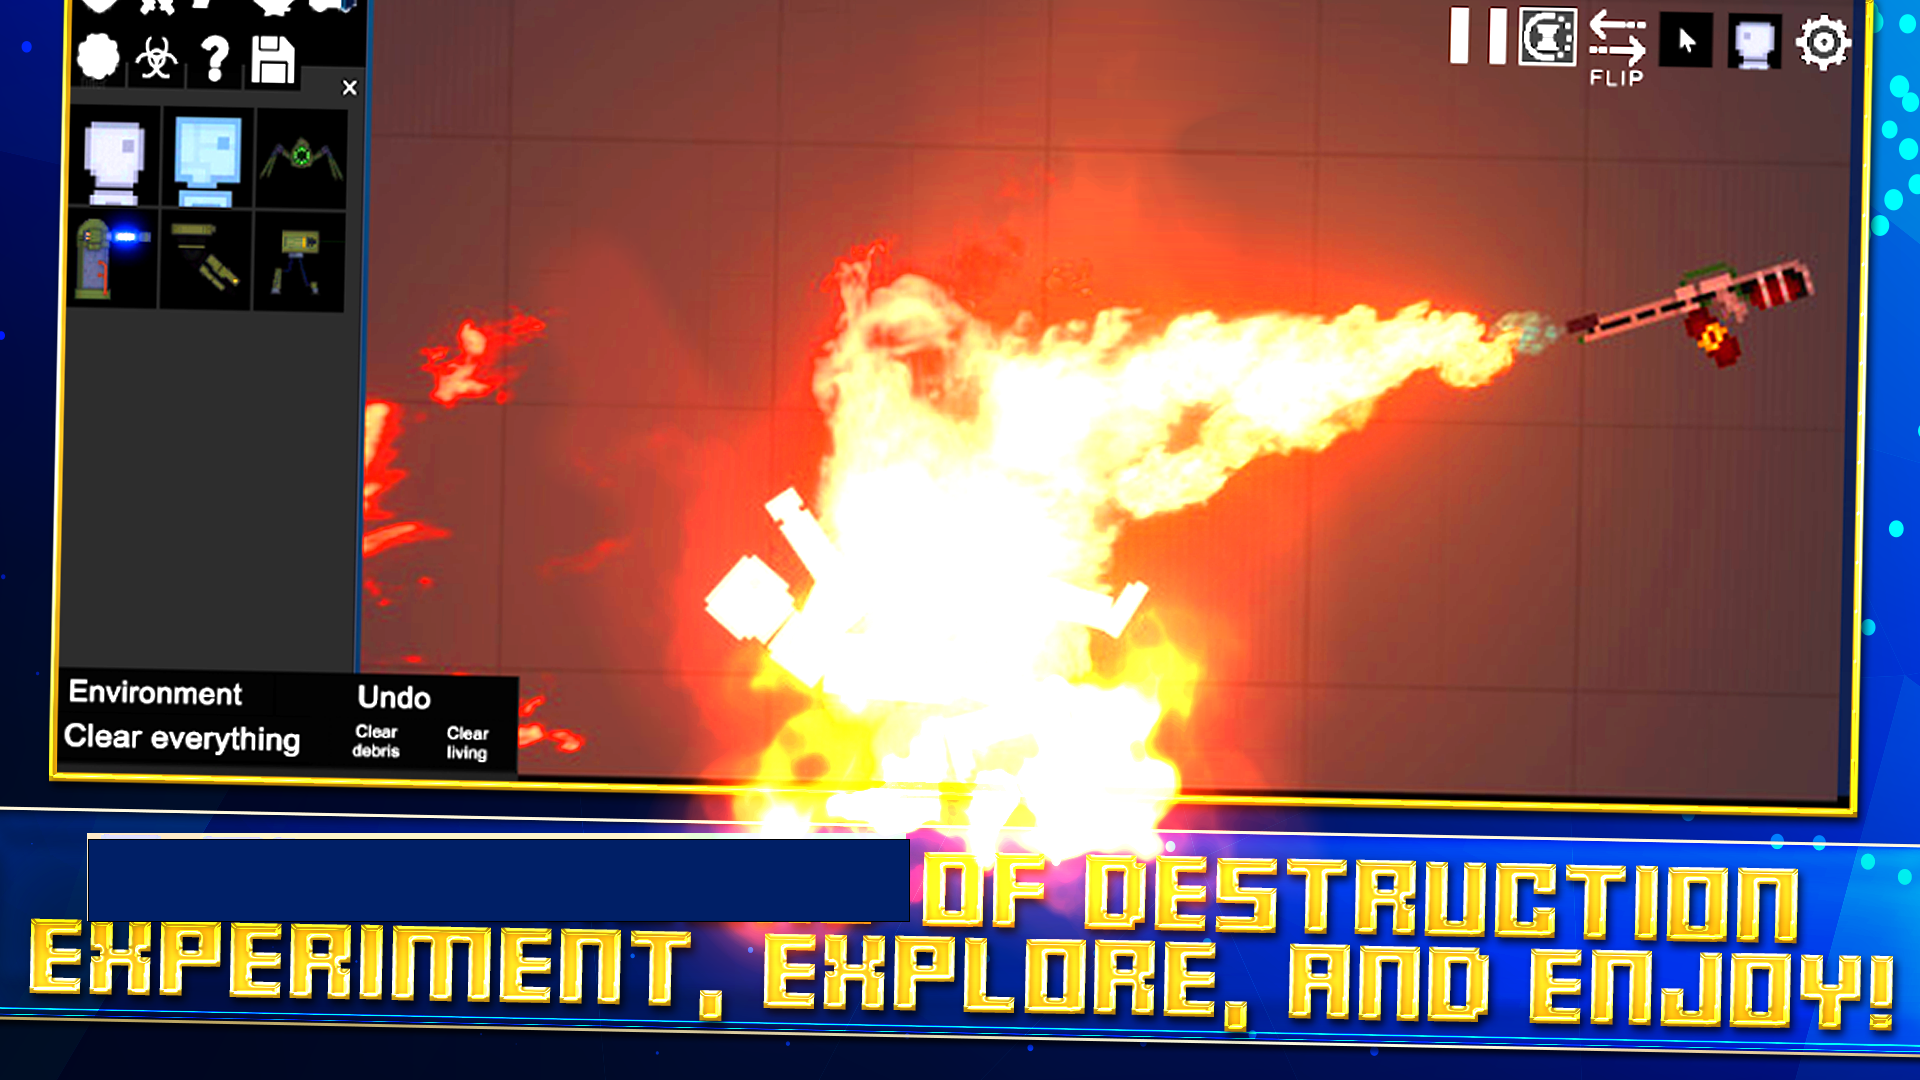 Pixel Playground screenshot game